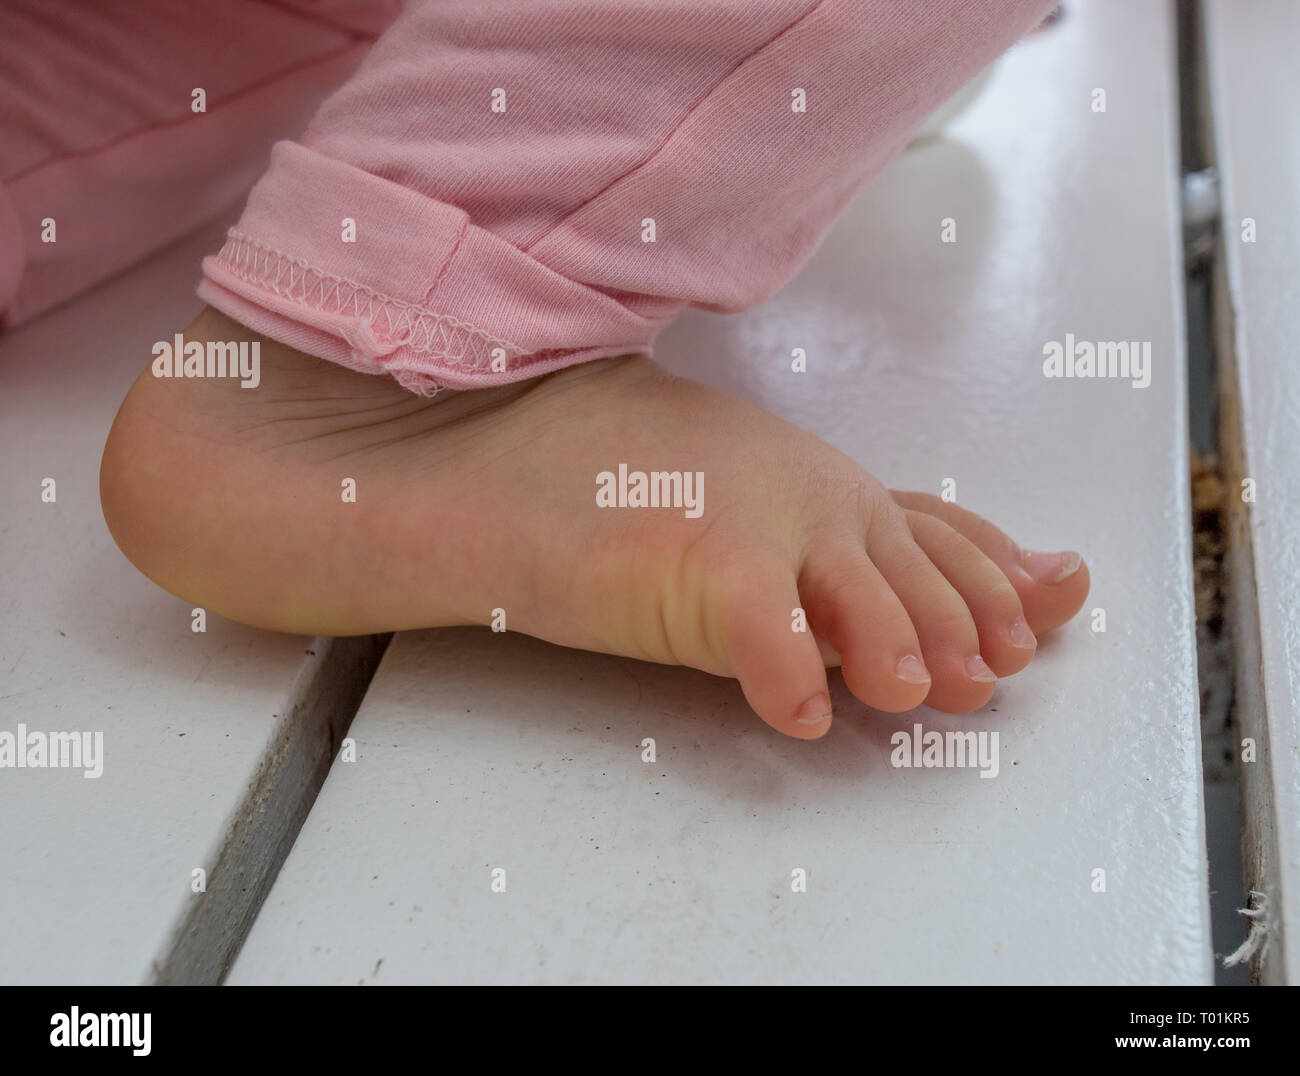 Den rechten Fuß von einem Baby isoliert Closeup auf einem weißen Holz- oberfläche Bild mit Kopie Raum im Querformat. Stockfoto